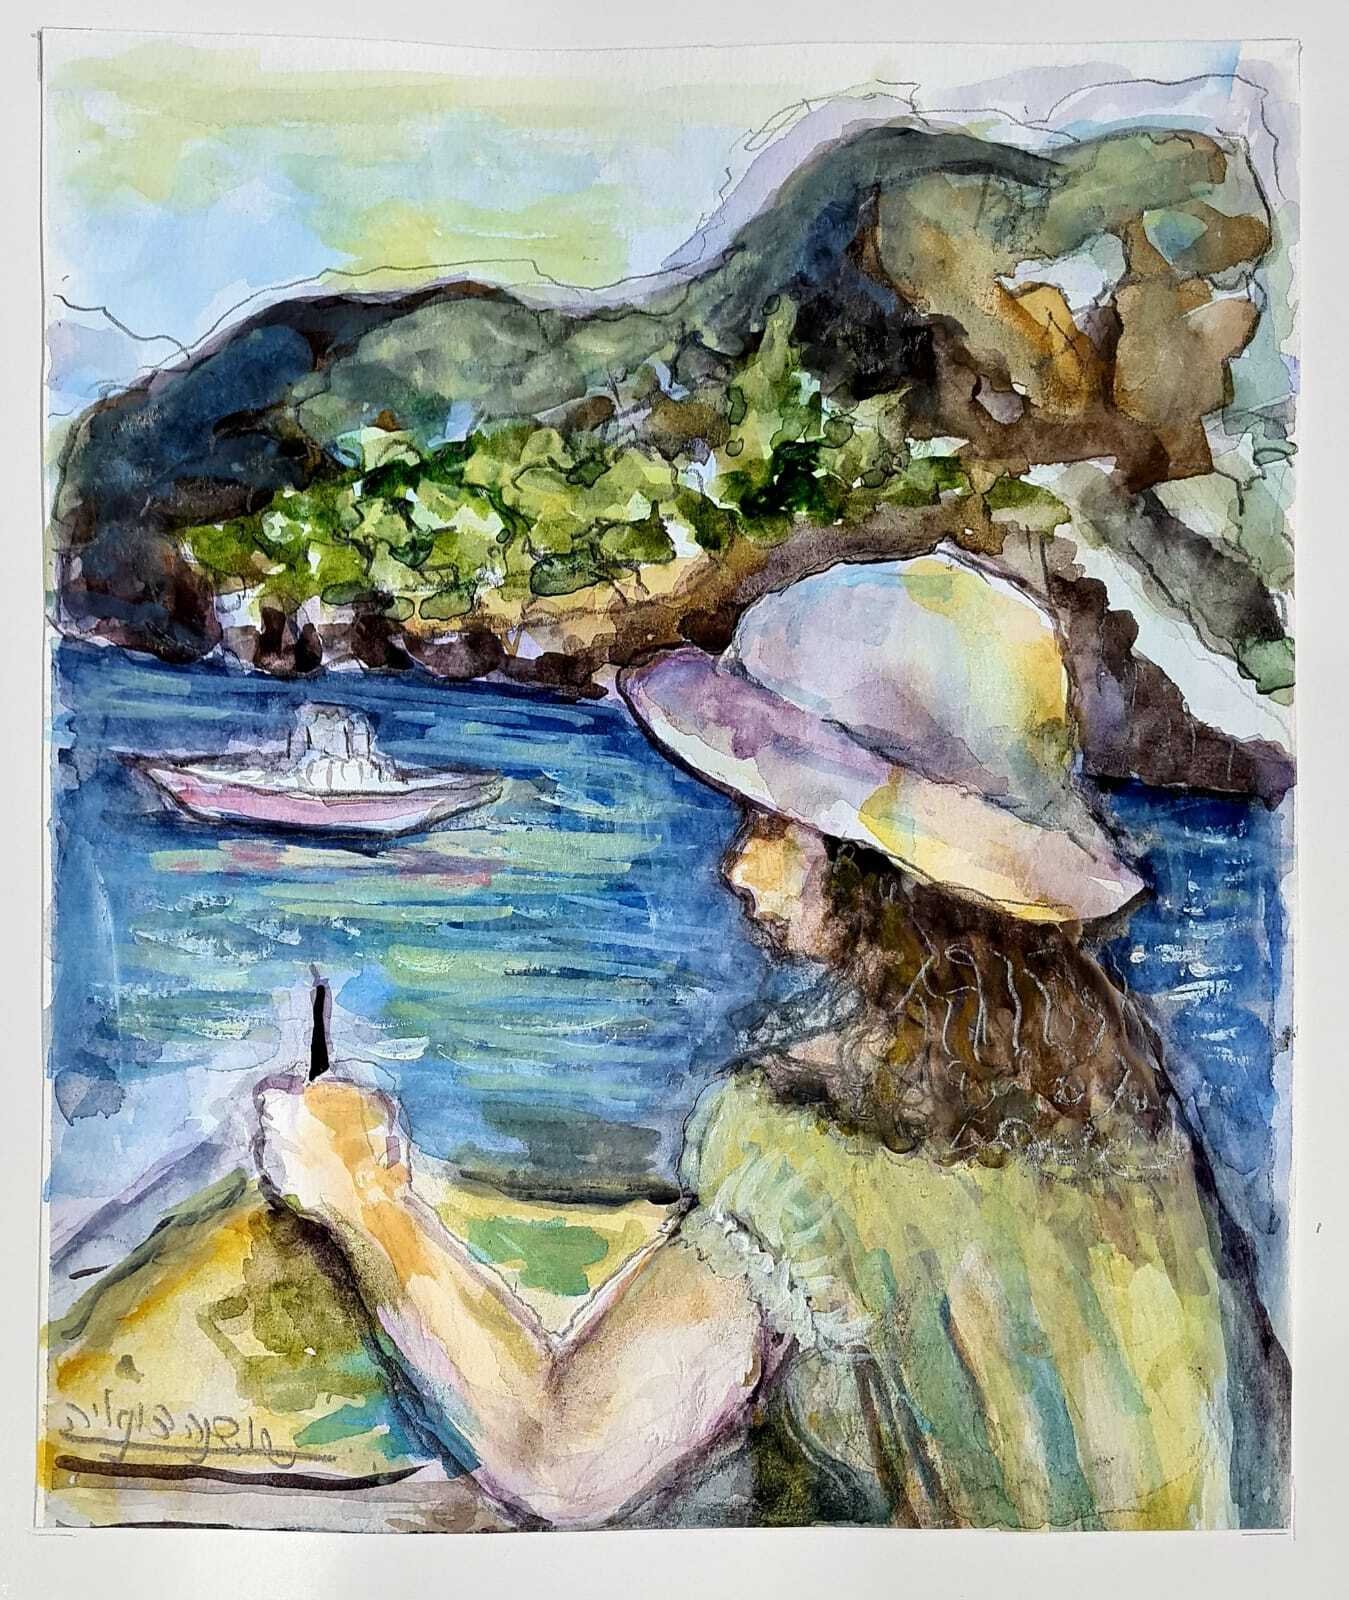 ציור מס. 62 - "אמנית מול הים"